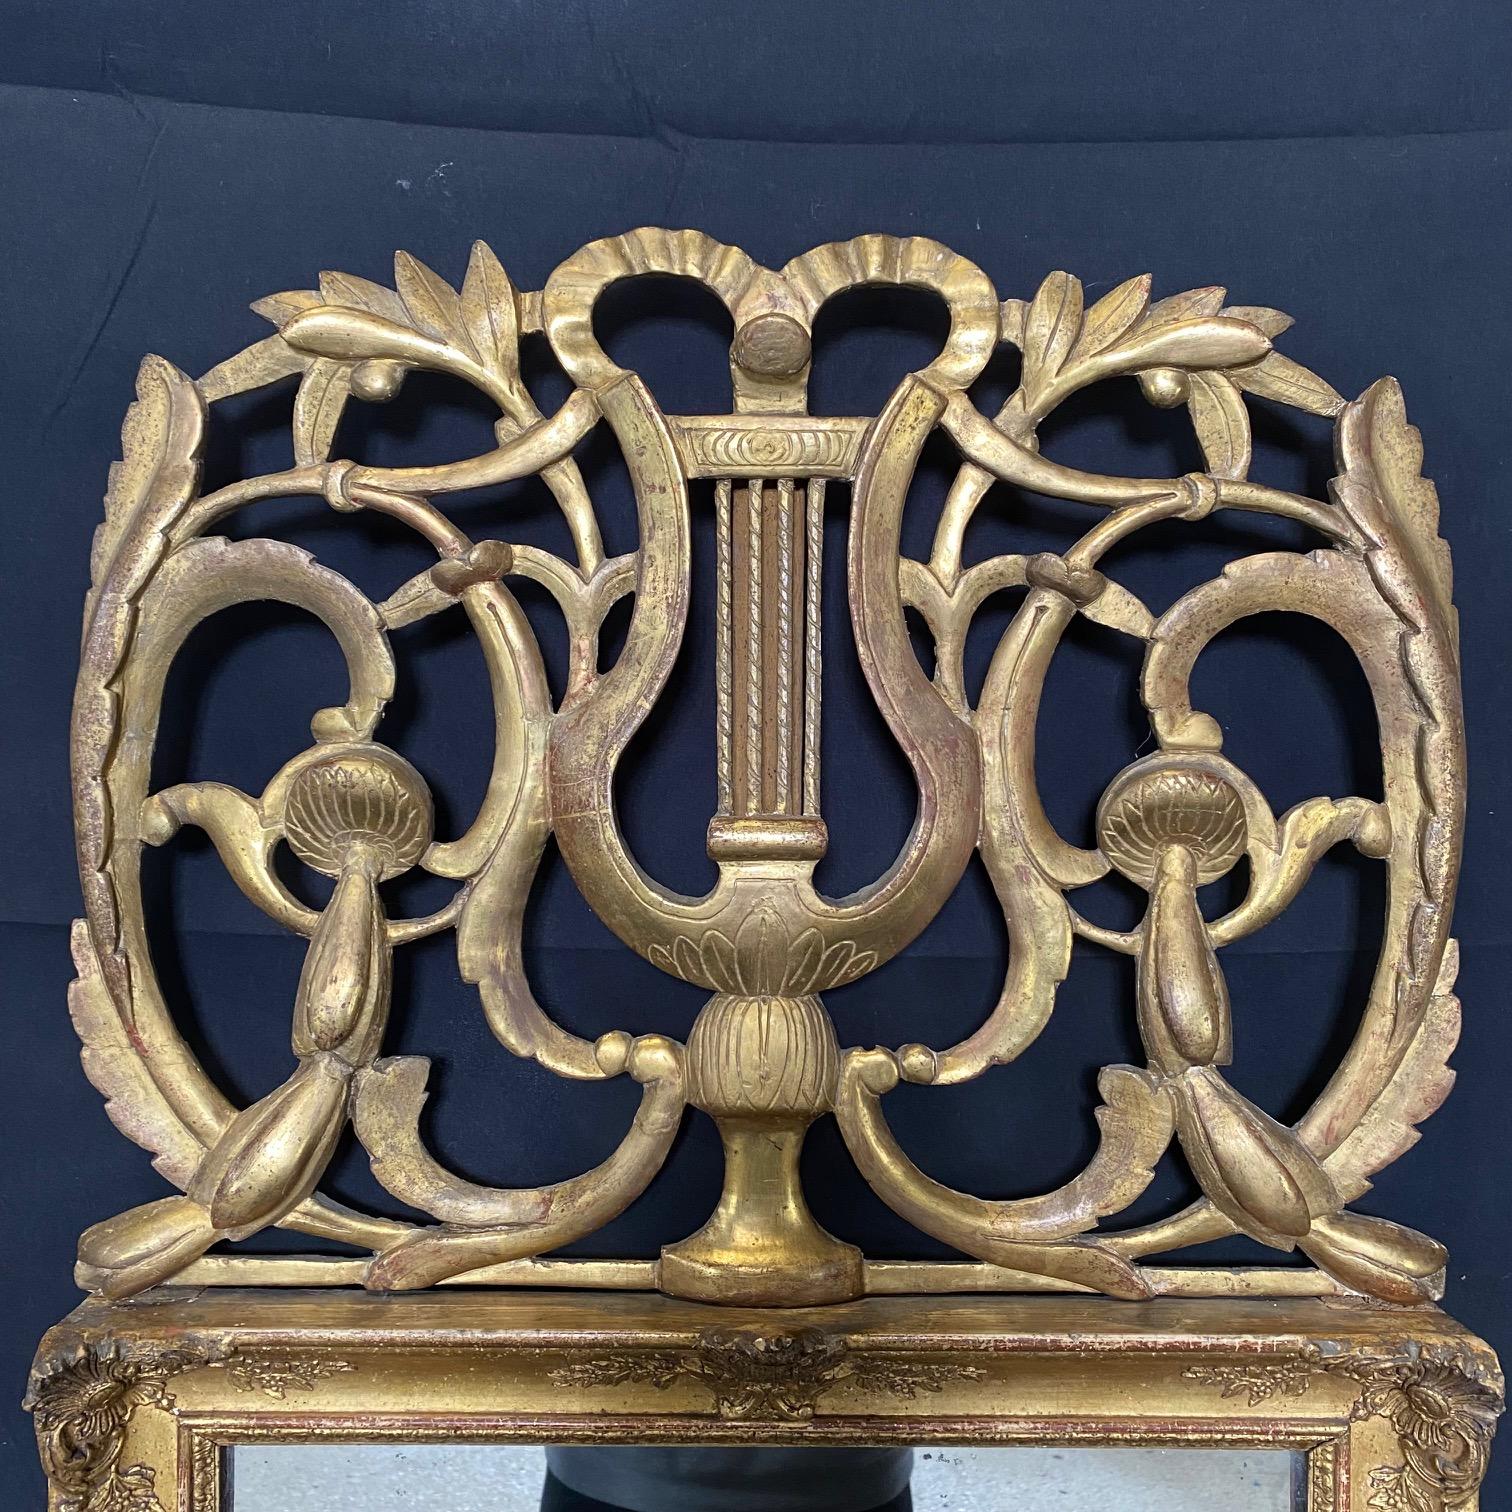 Rare forme de miroir français Louis XVI en bois sculpté et doré à la main avec un fronton qui présente une belle harpe ou lyre, des motifs floraux et une couronne de laurier. 
# 6160
Le miroir mesure 16,25 x 19 h

